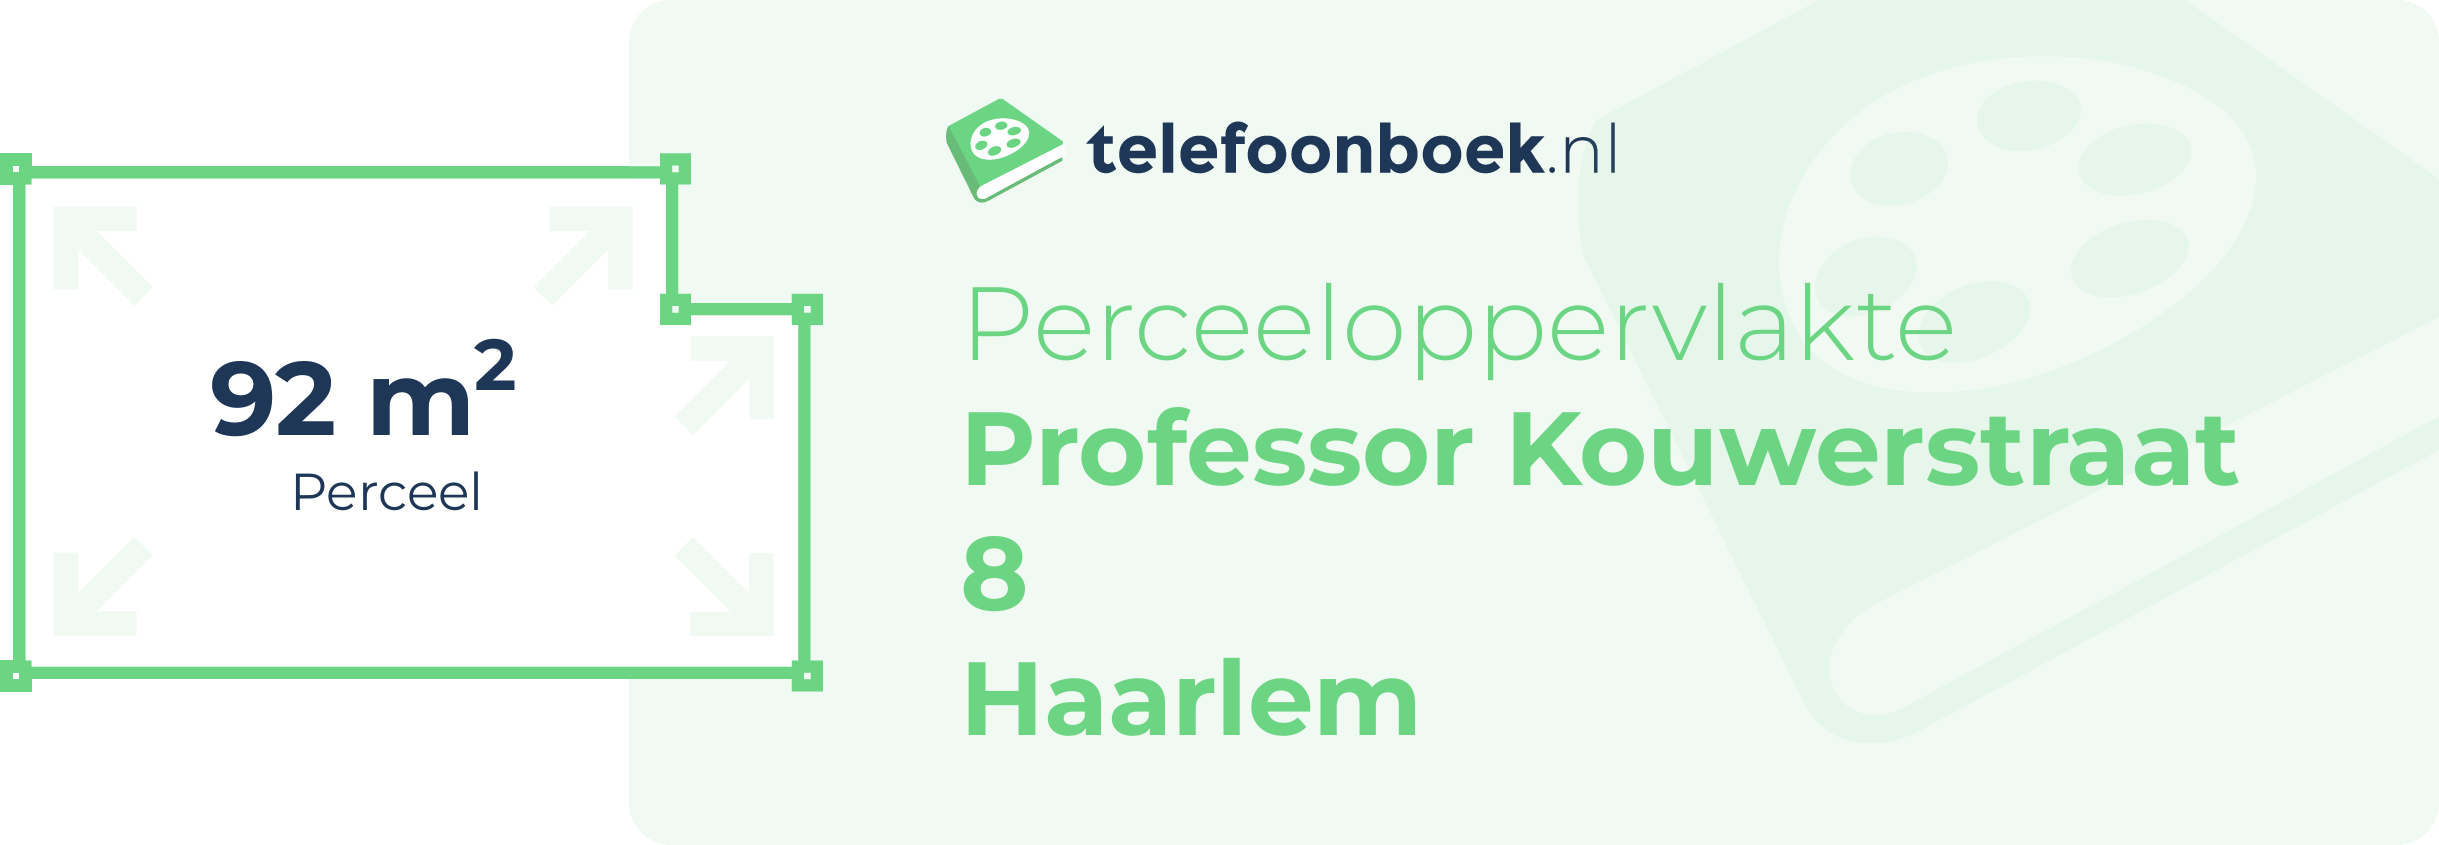 Perceeloppervlakte Professor Kouwerstraat 8 Haarlem